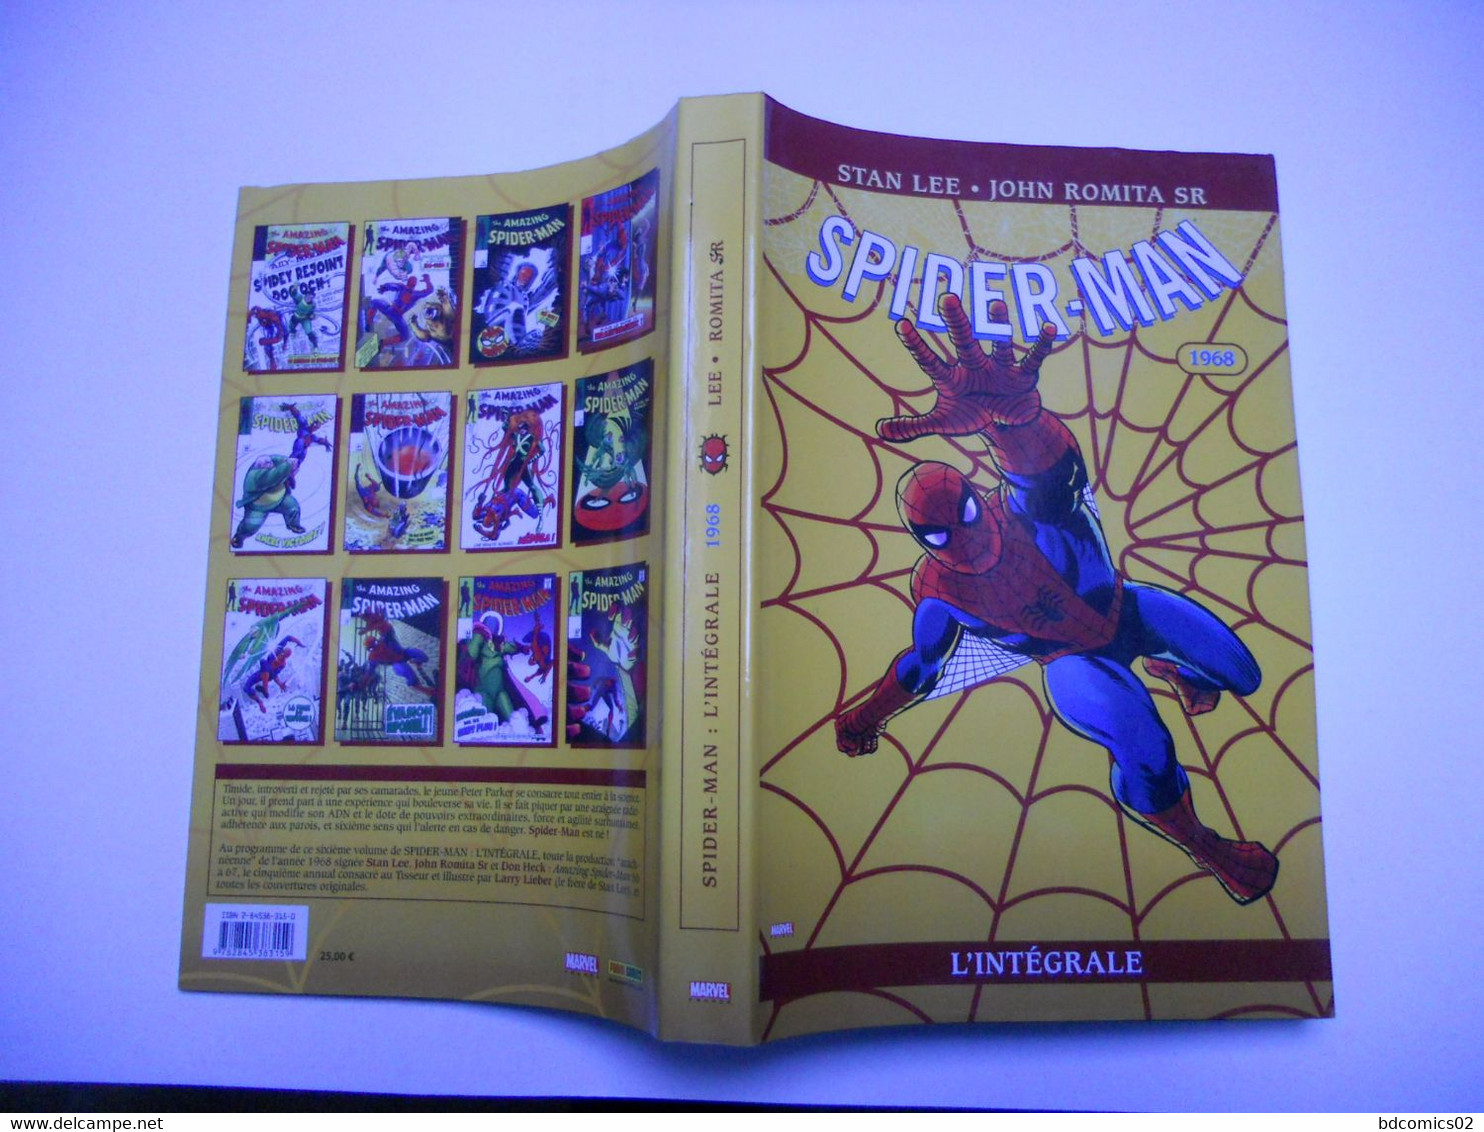 Spiderman - Spider-Man L'intégrale - 1968 STAN LEE /// JOHN ROMITA SR album  cartonné TTBE